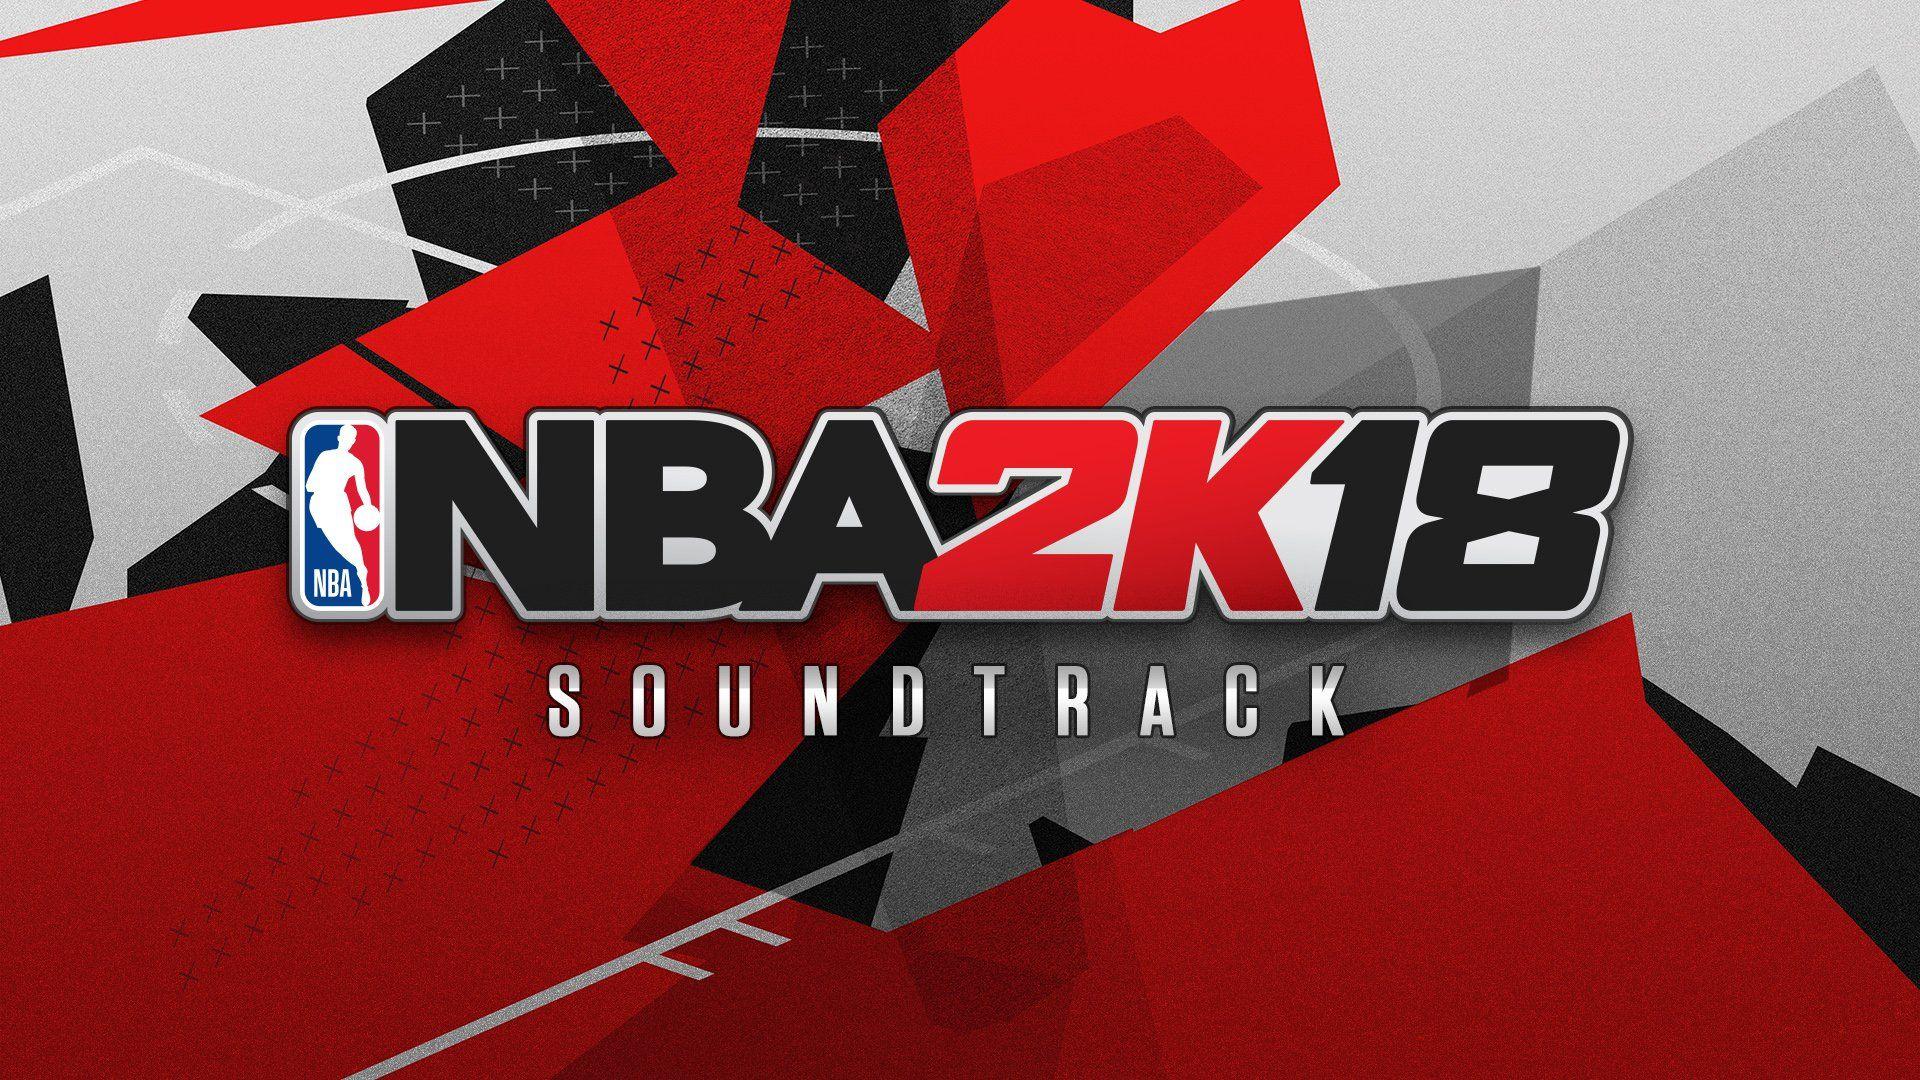 NBA 2K18' reveals soundtrack featuring big names like Kendrick